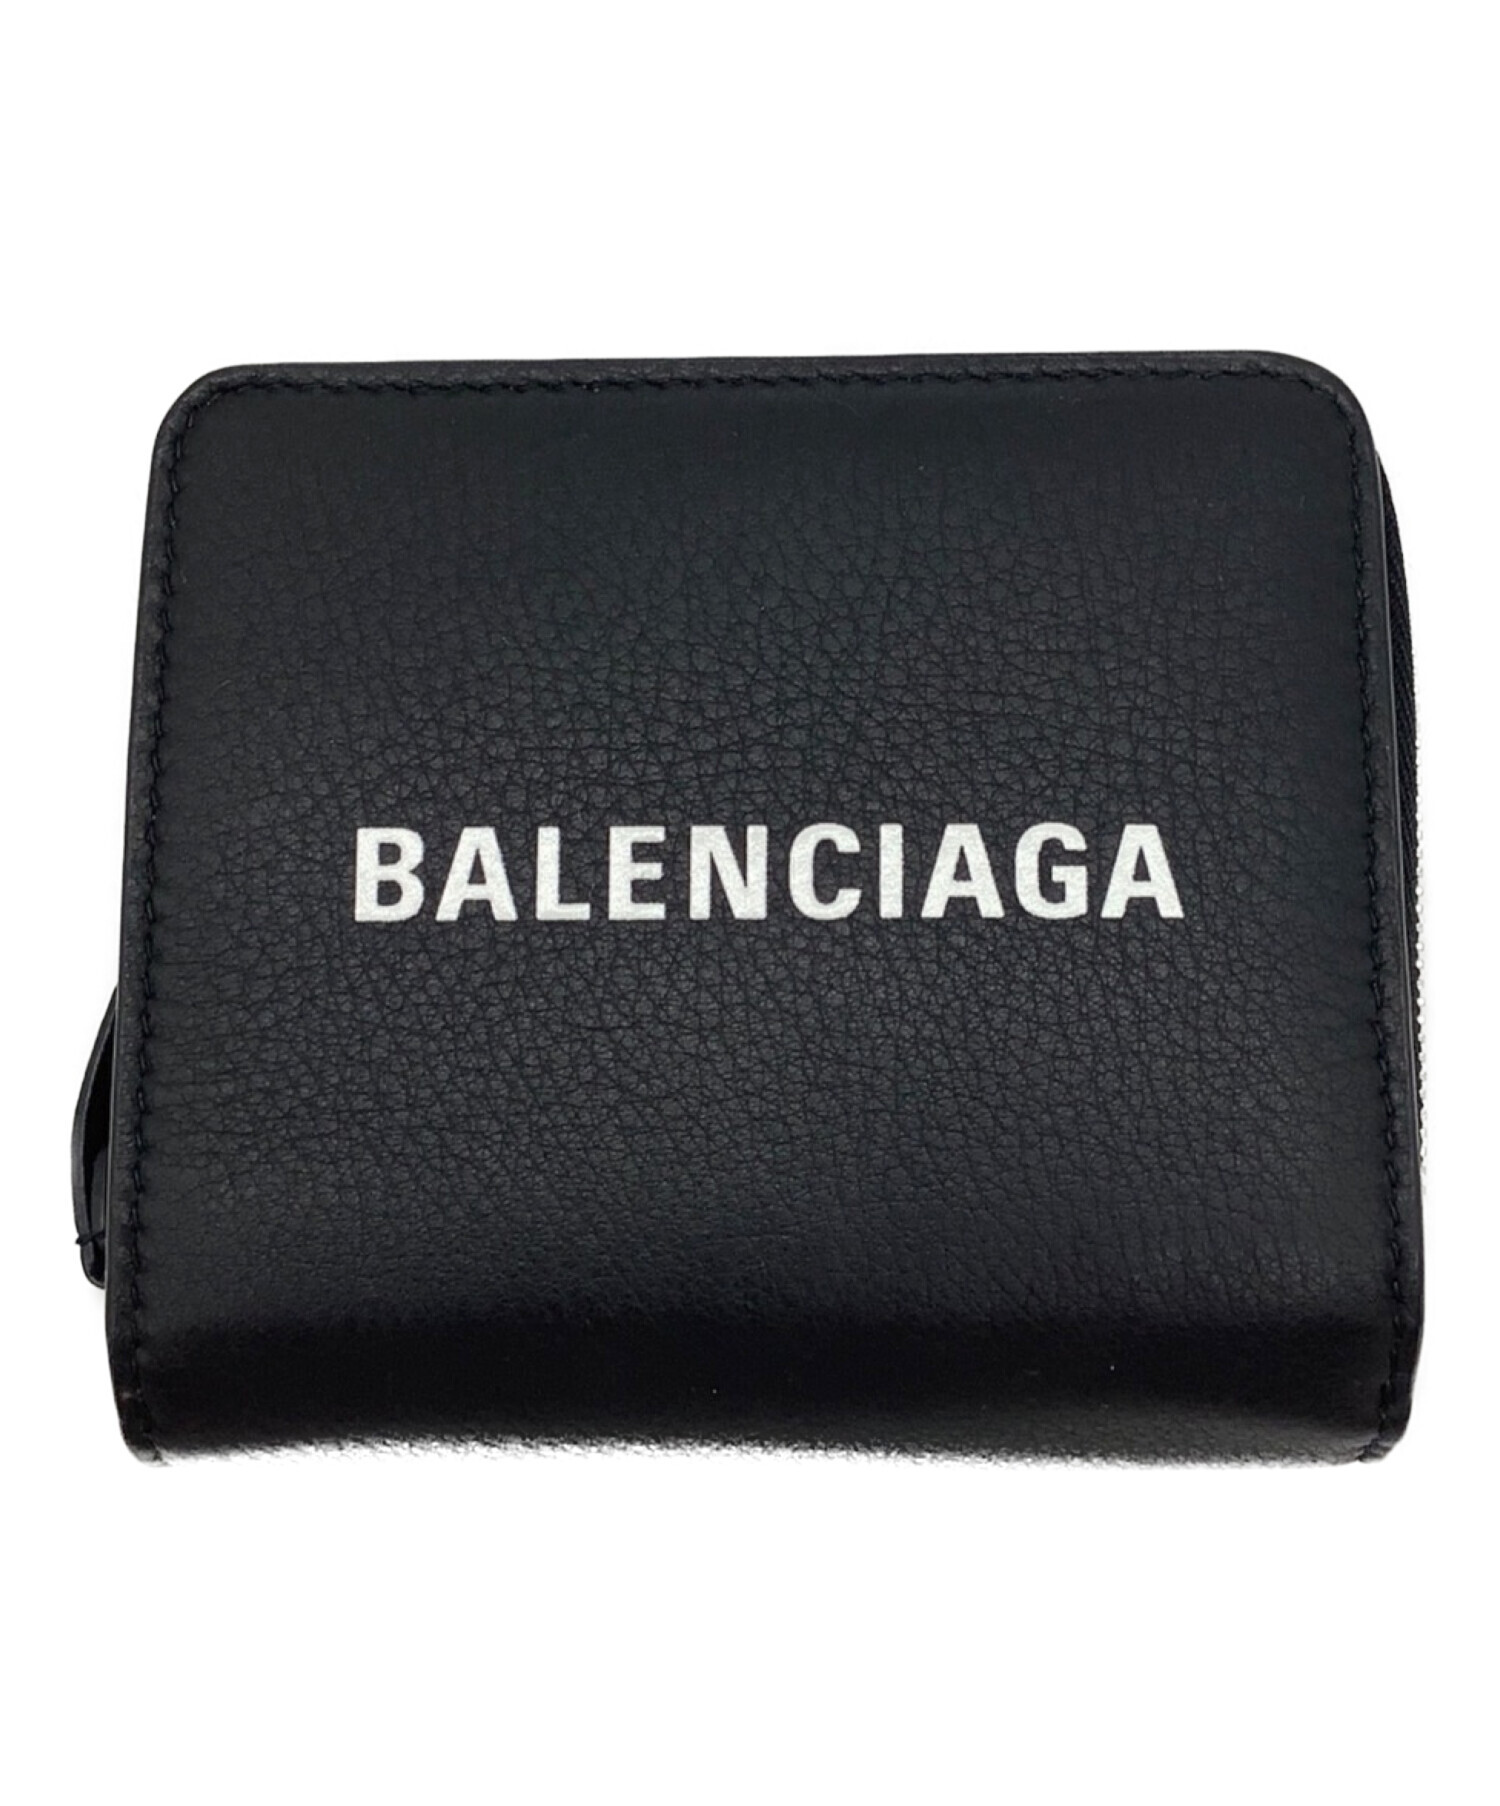 中古・古着通販】BALENCIAGA (バレンシアガ) 2つ折り財布 ブラック